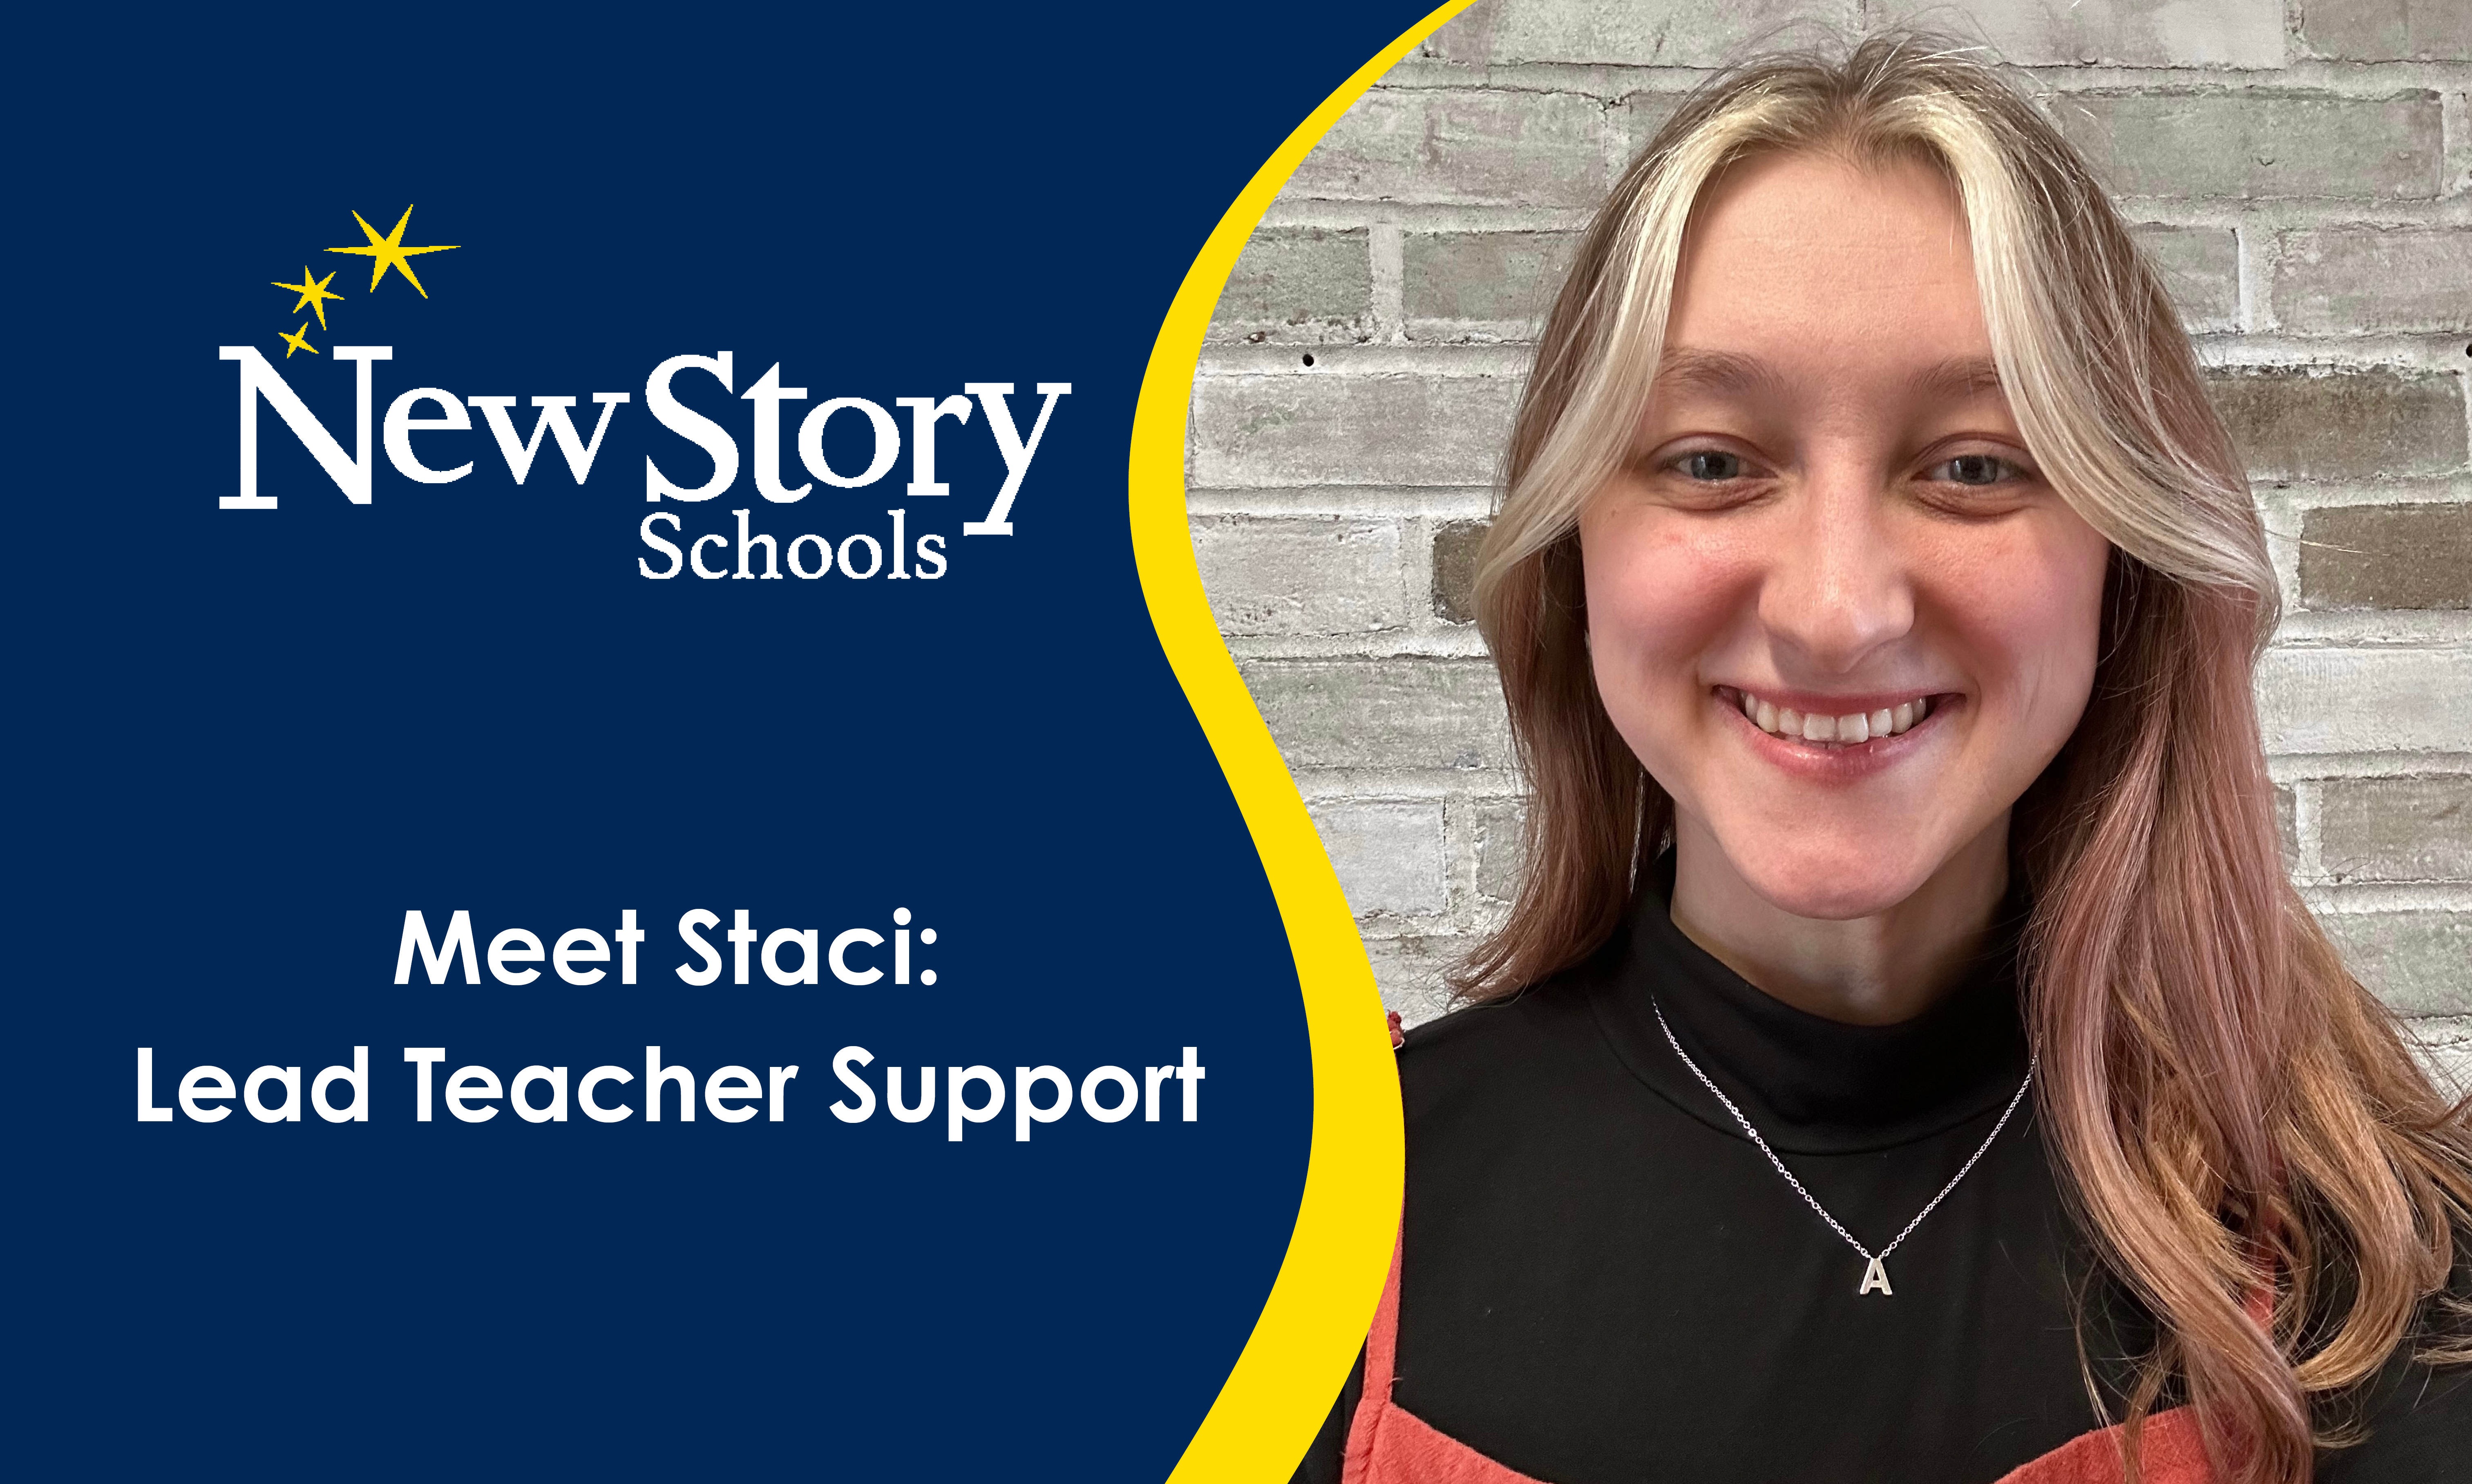 Meet Staci: Lead Teacher Support